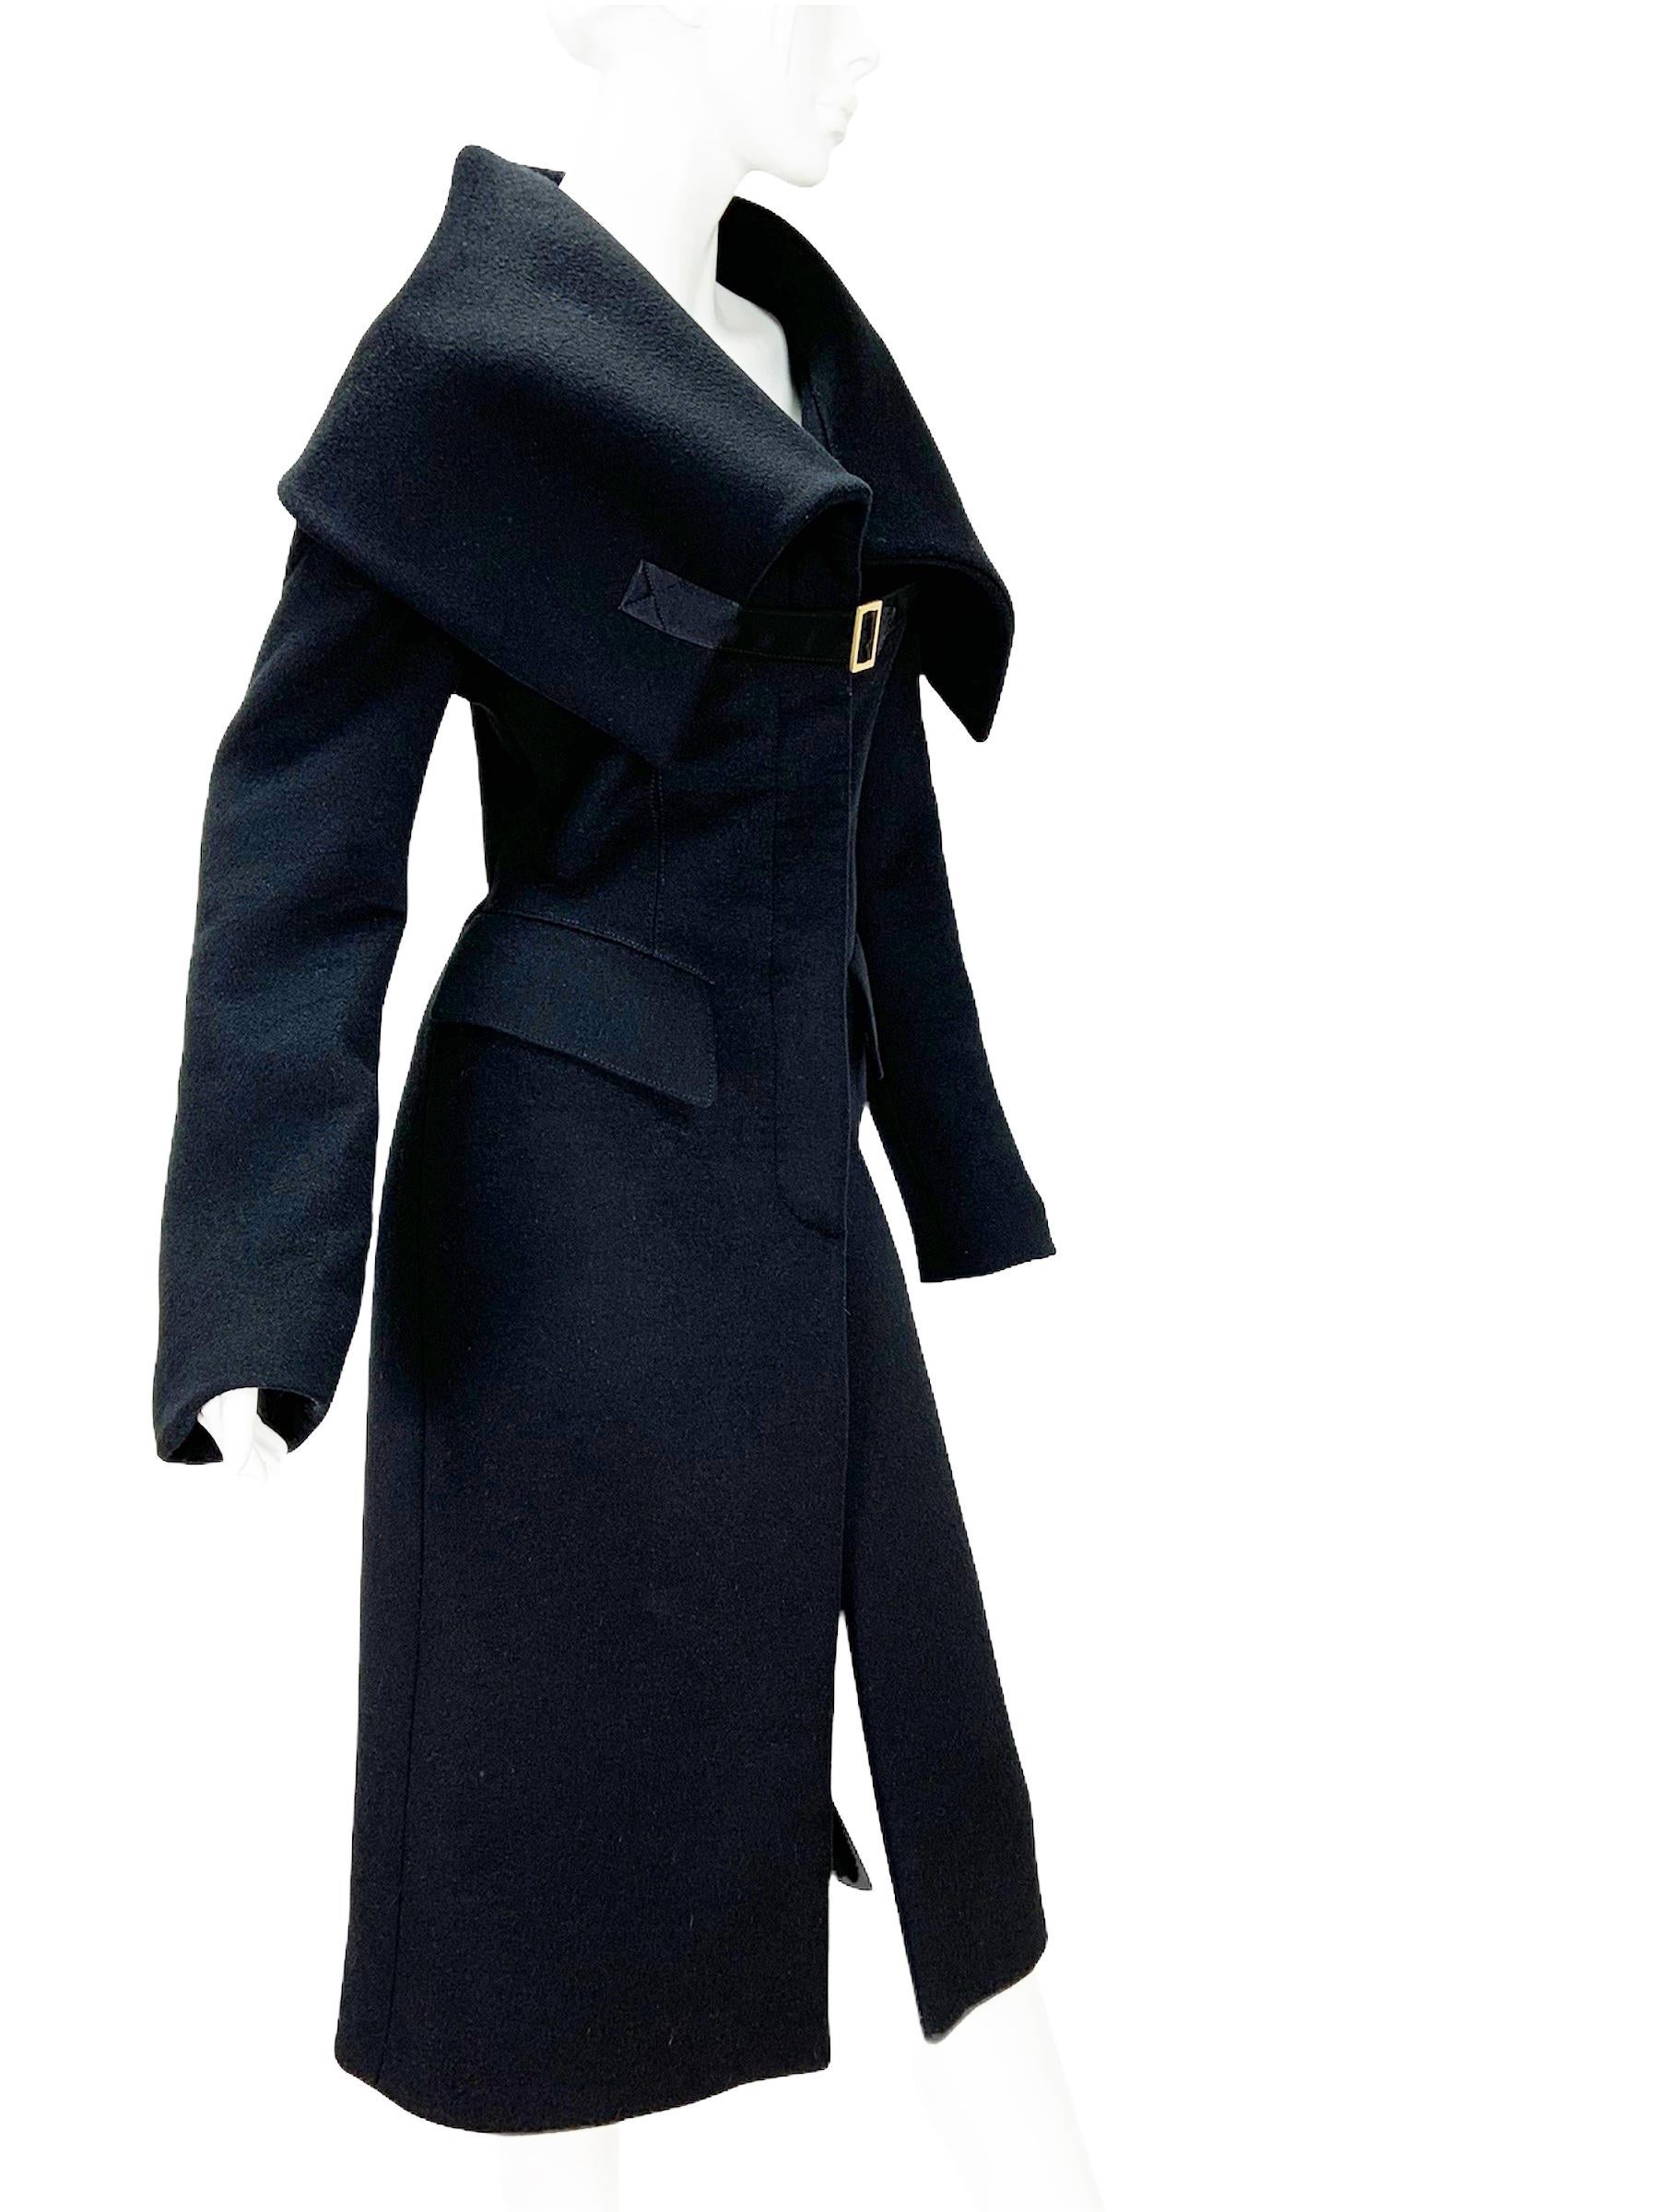 Tom Ford pour Gucci - Manteau ajusté en laine noire
Taille du créateur 44 - taille réduite, veuillez vérifier les mesures.
Collection F/W 2003
100% laine, col châle oversize, deux poches avant, fermeture cachée par boutons, fente haute au dos,